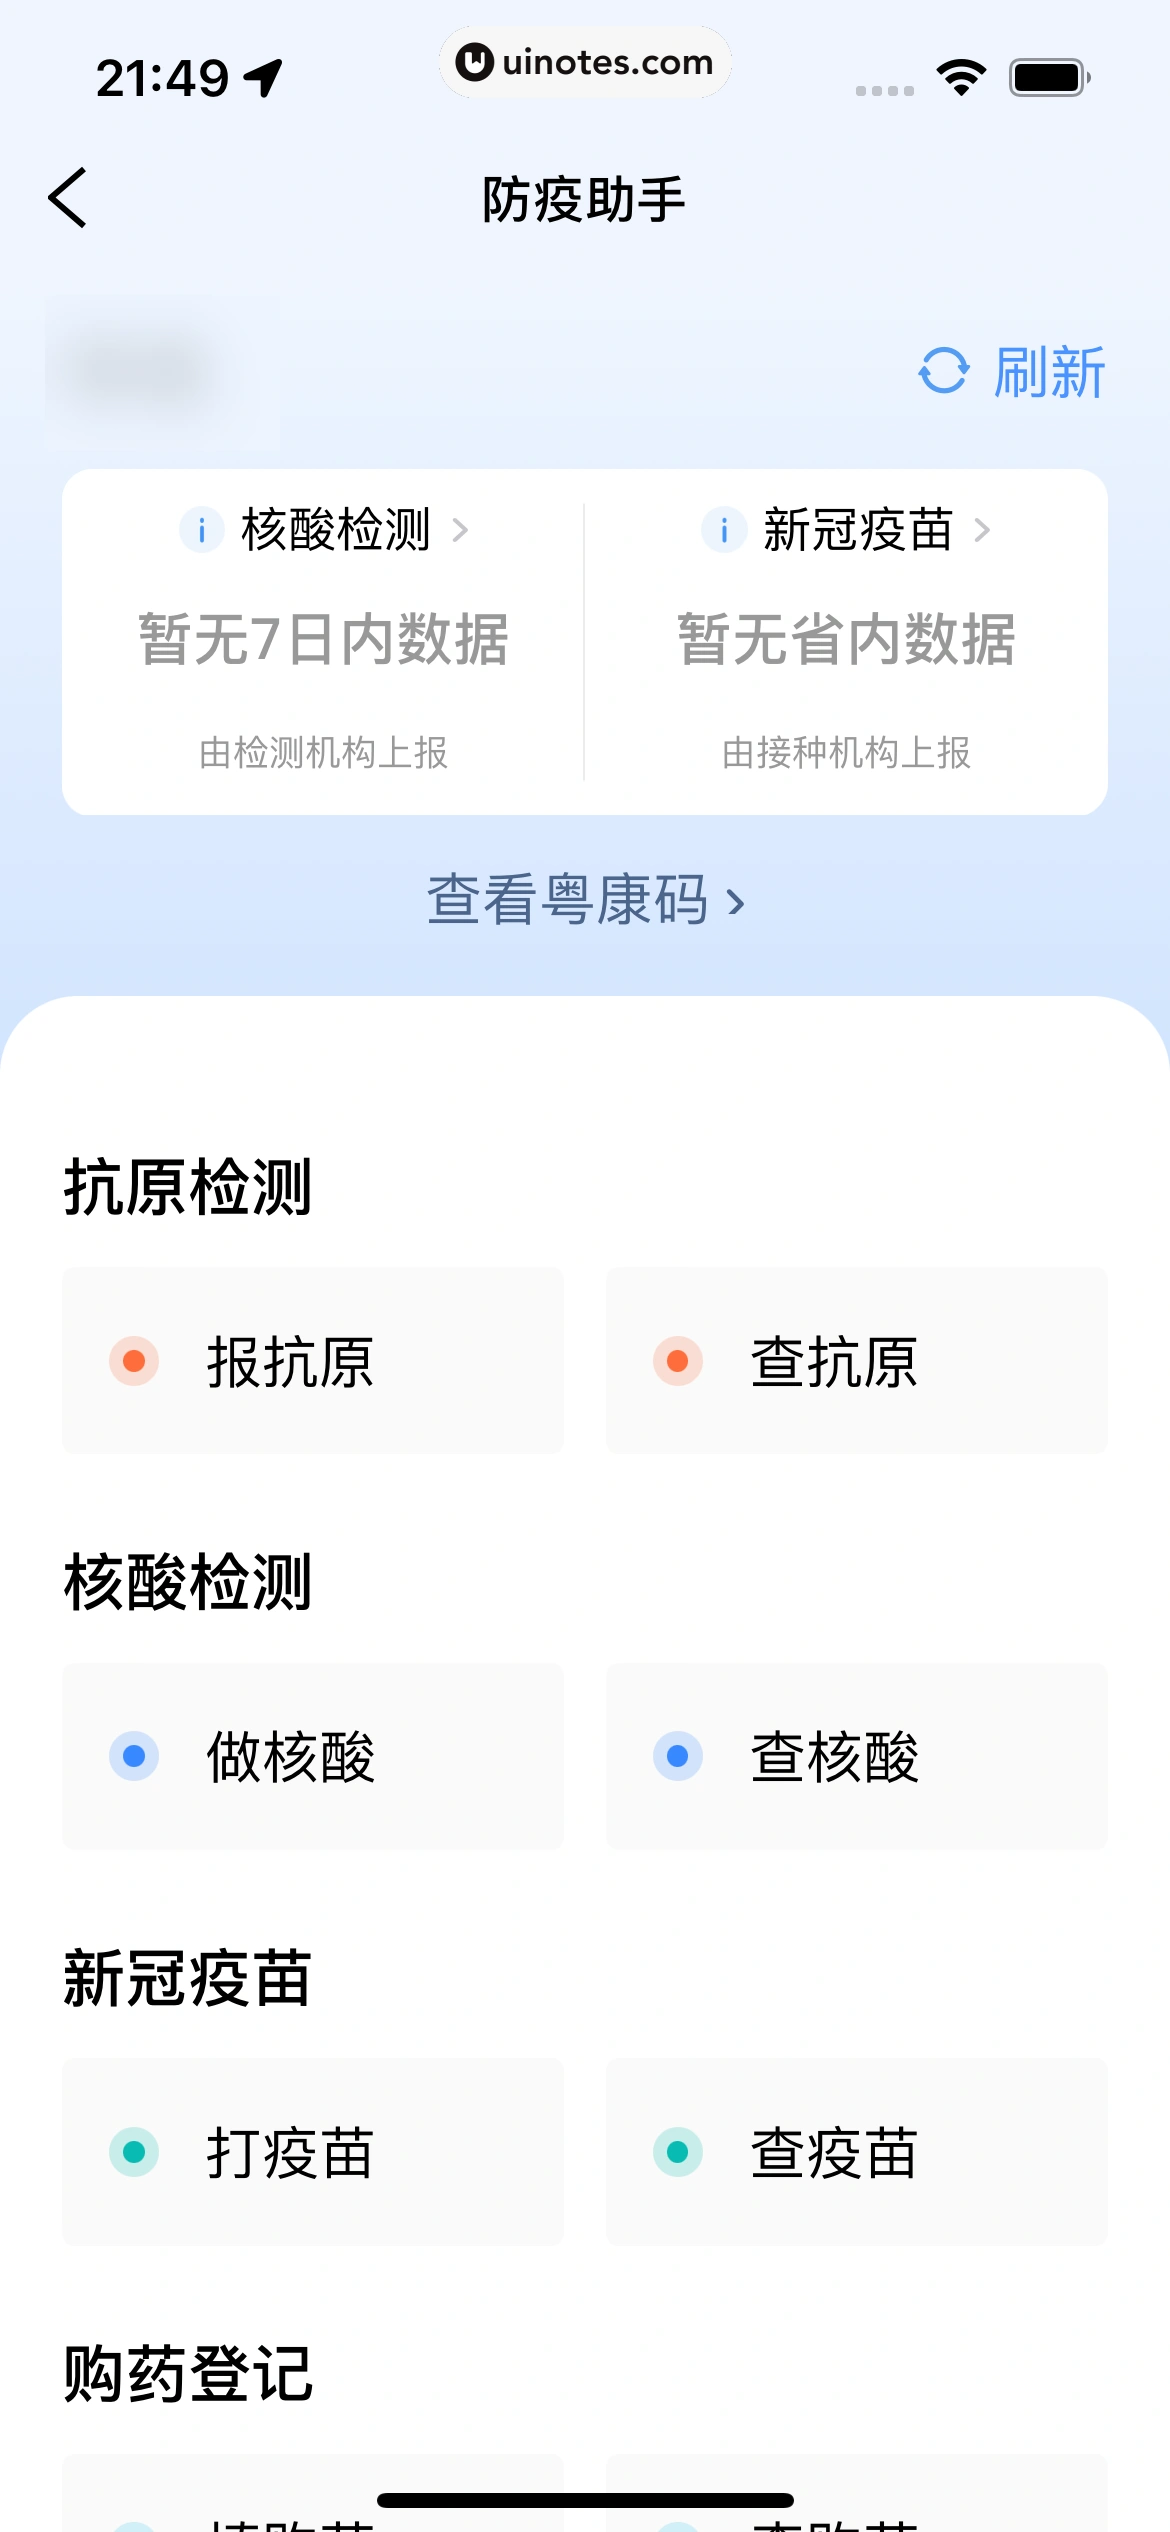 粤省事 App 截图 063 - UI Notes